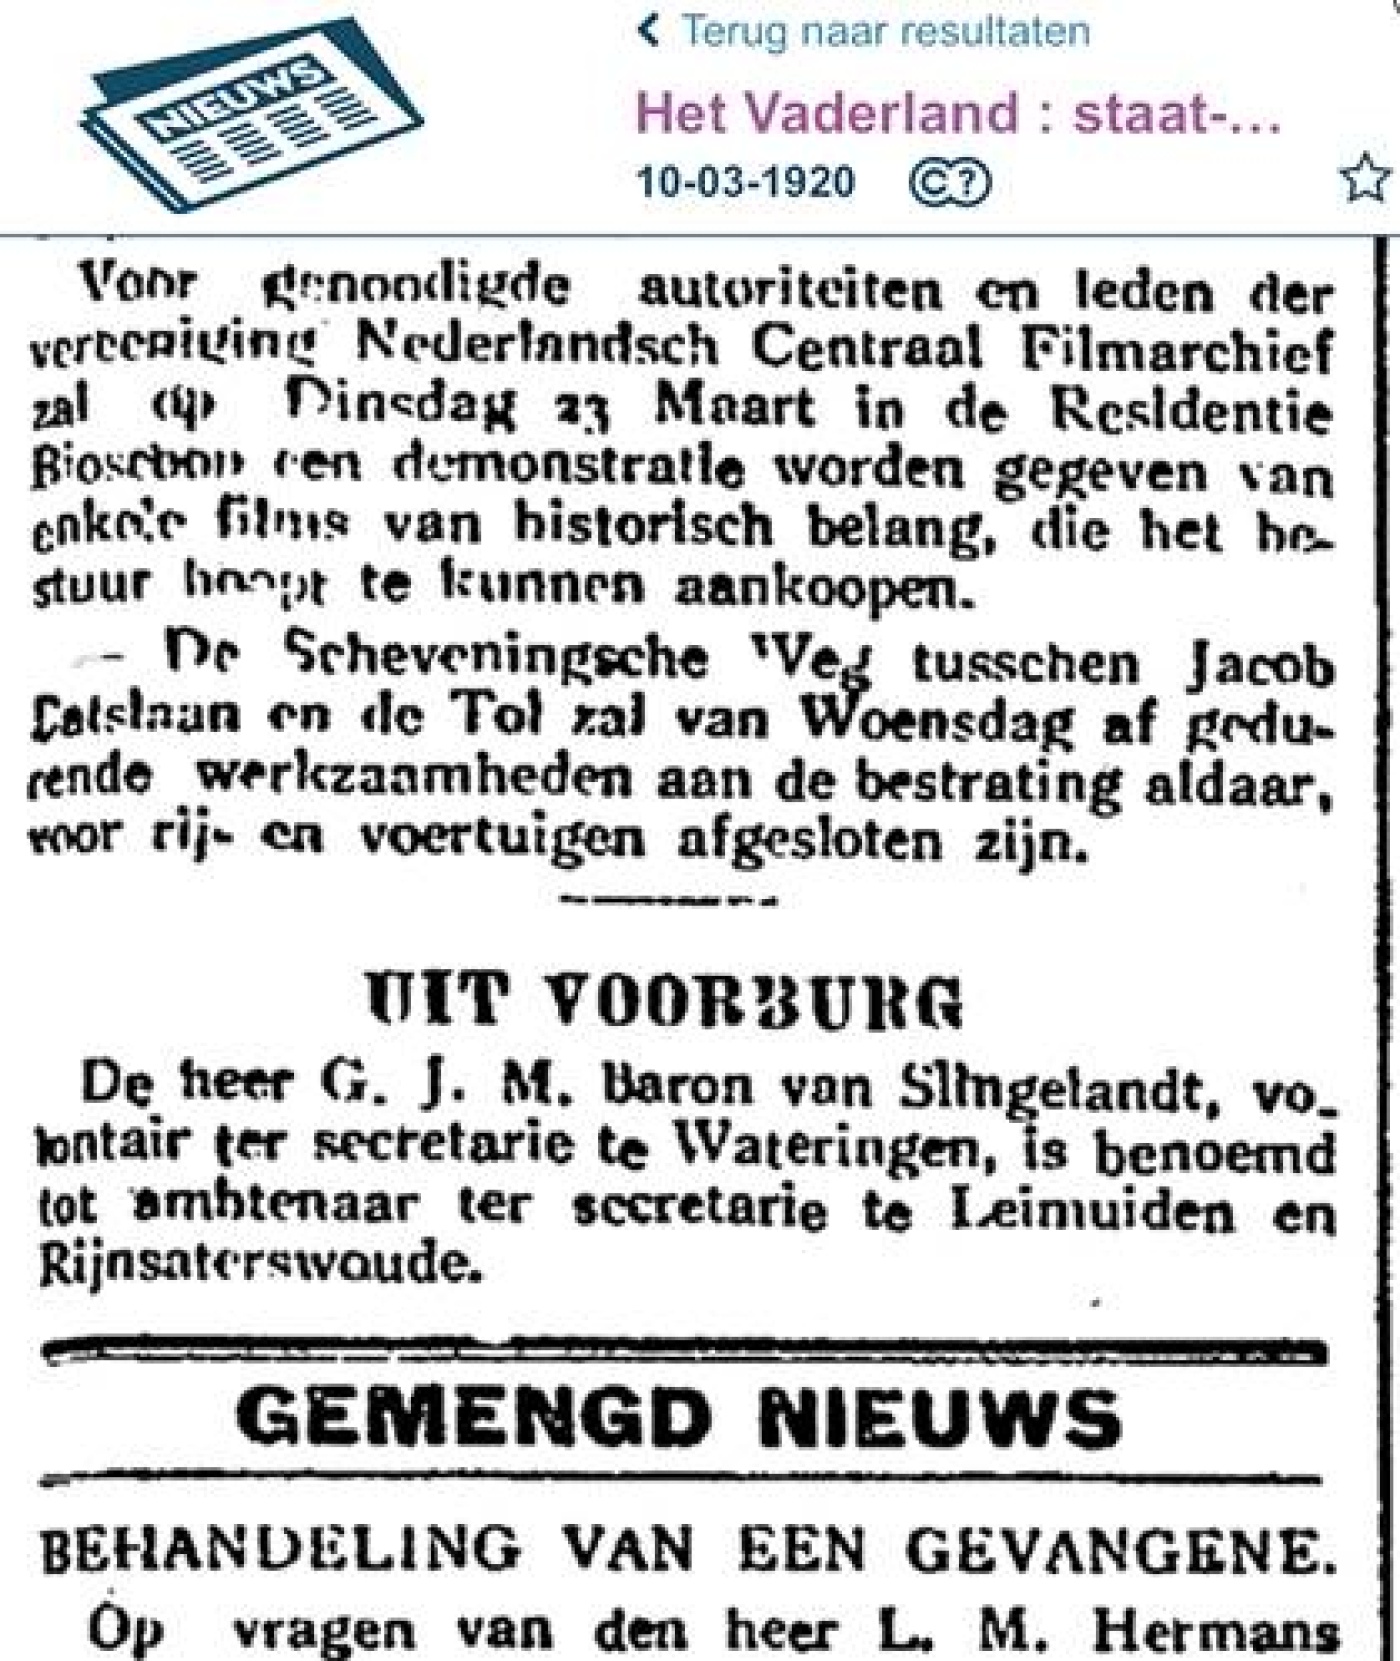 1920 maart De_krant_van_gisteren_10-3-1920.jpg